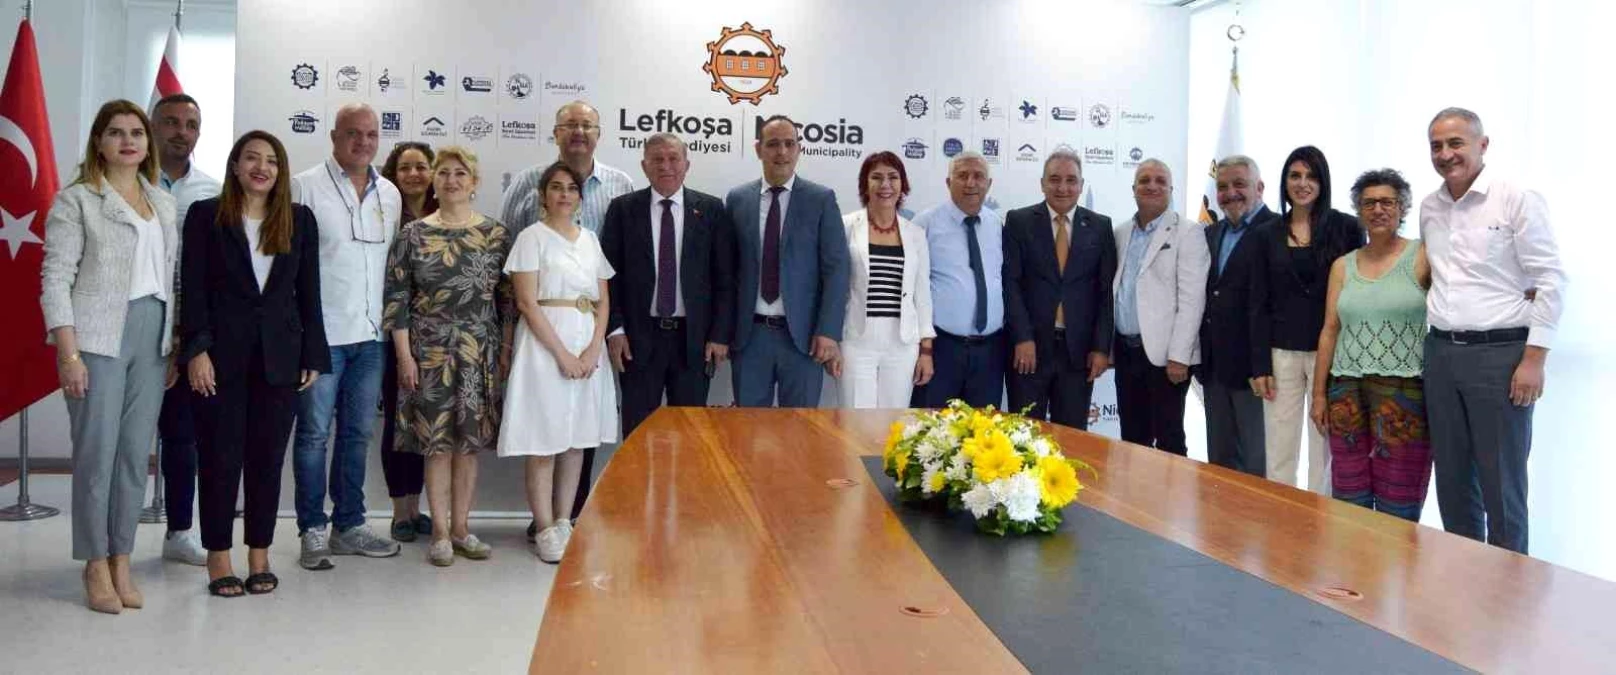 Seyhan ile Lefkoşa Türk Belediyesi arasında işbirliği protokolü